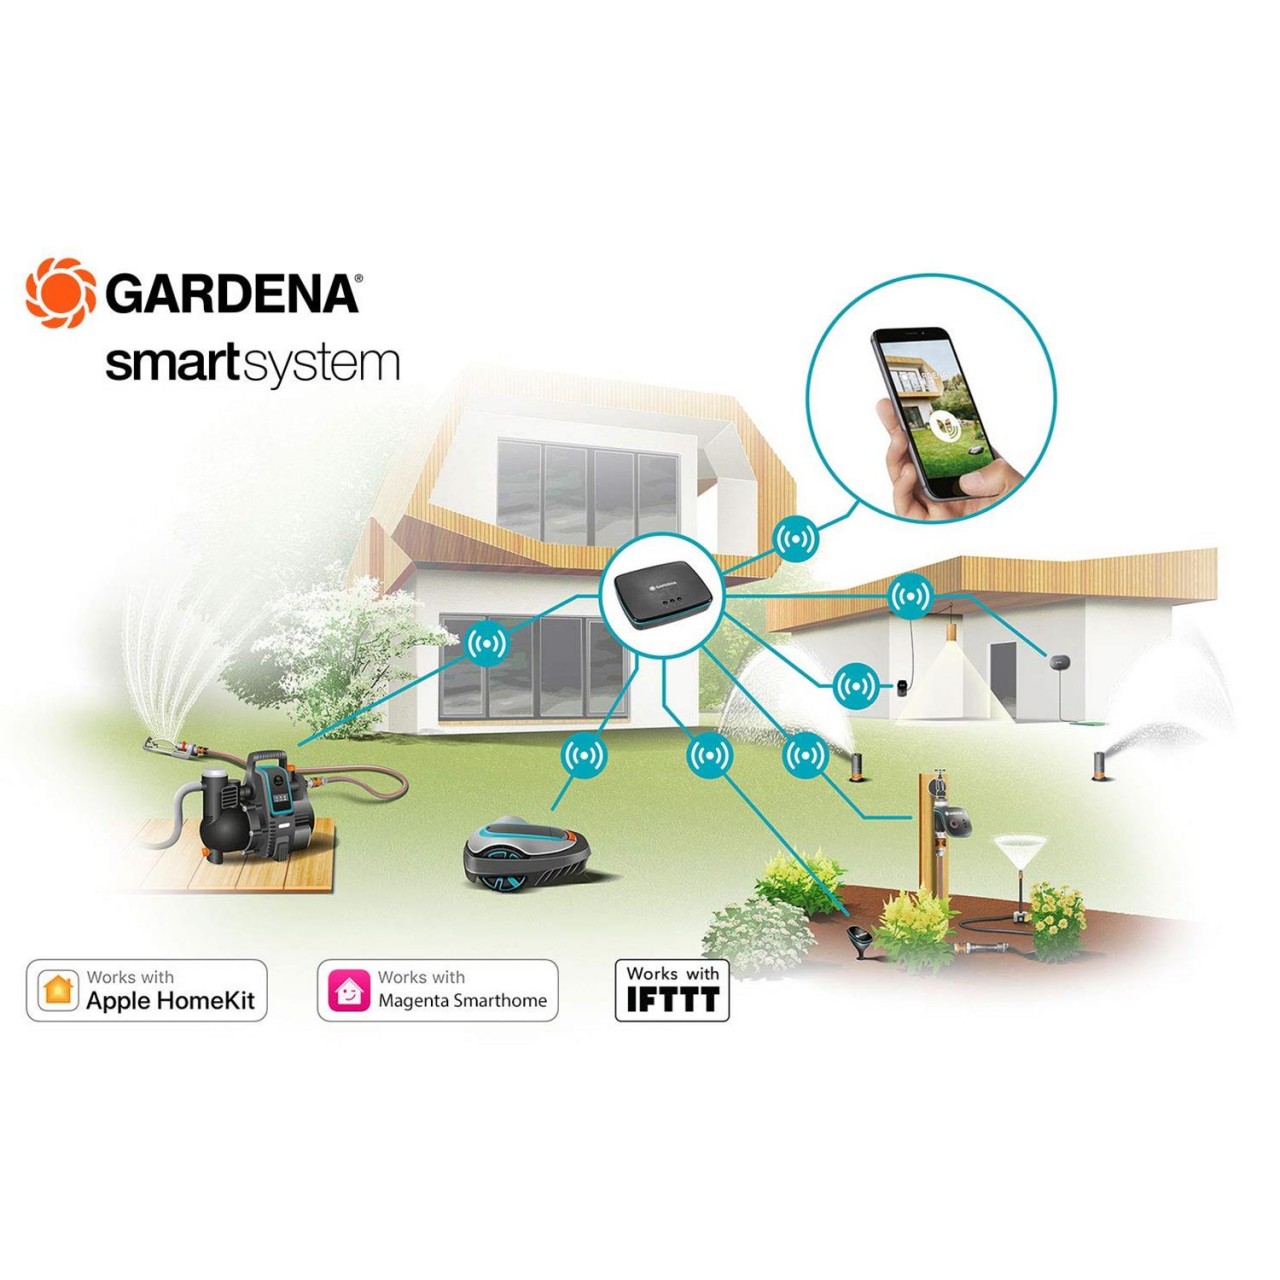 Gardena smart Sensor 19030-20 Bewässerungssteuerung per App Gartenbewässerung